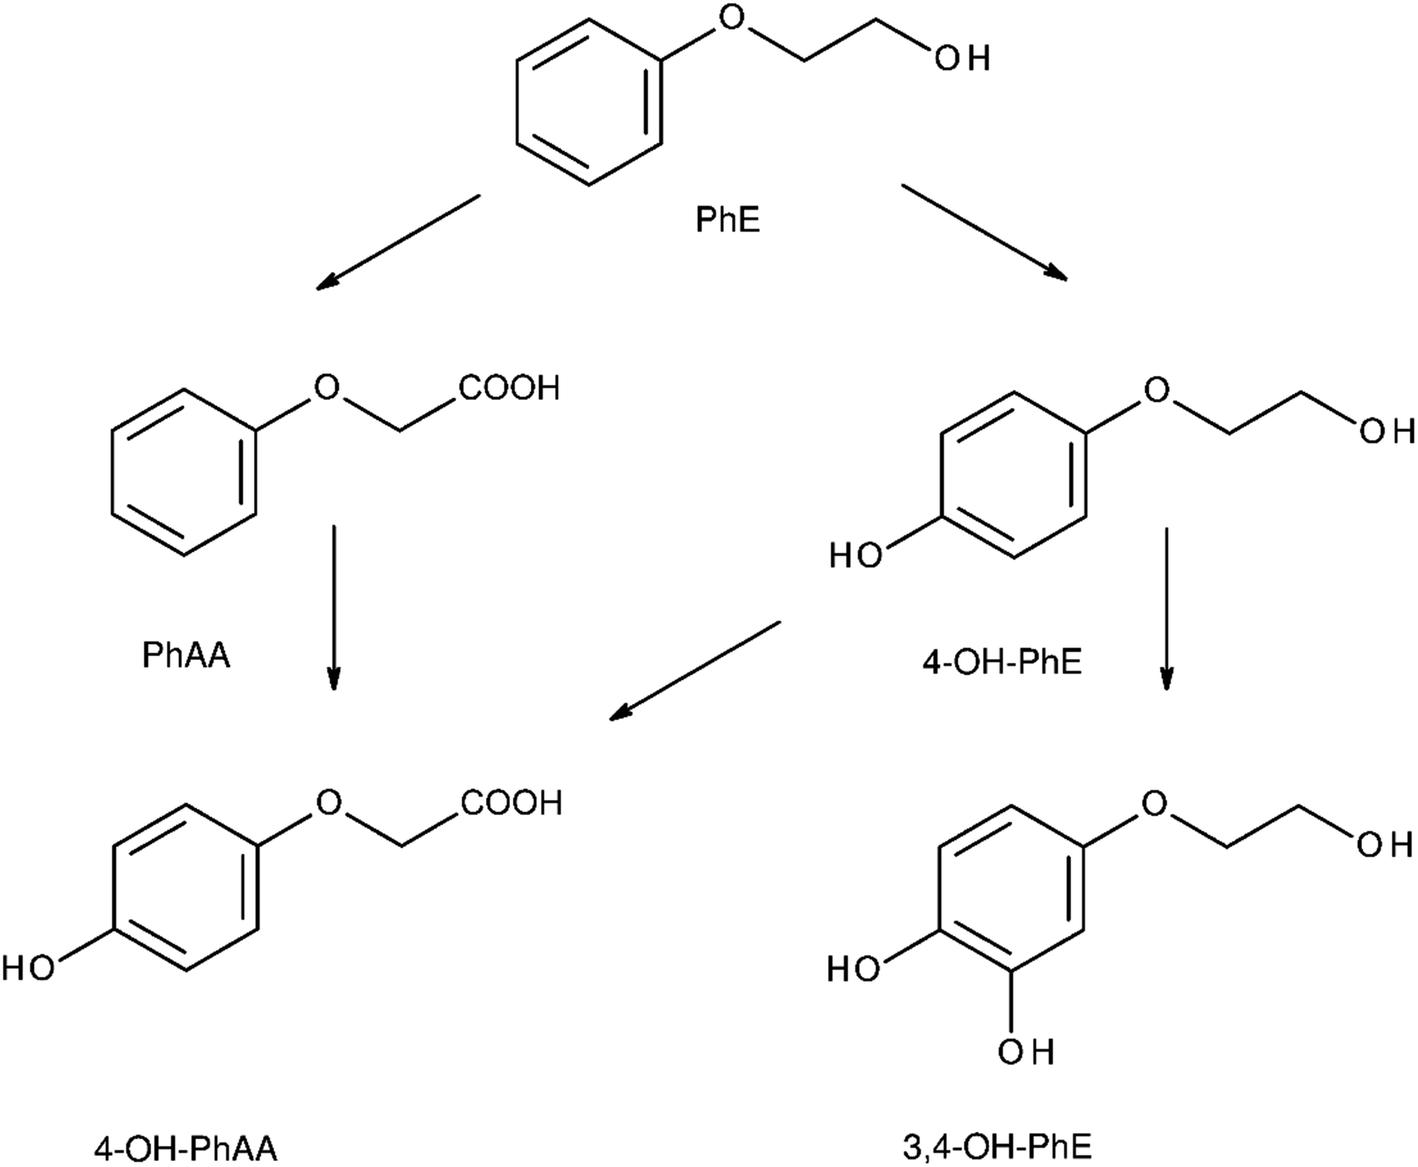 Metabolic Pathways of 2-Phenoxyethanol in Rats